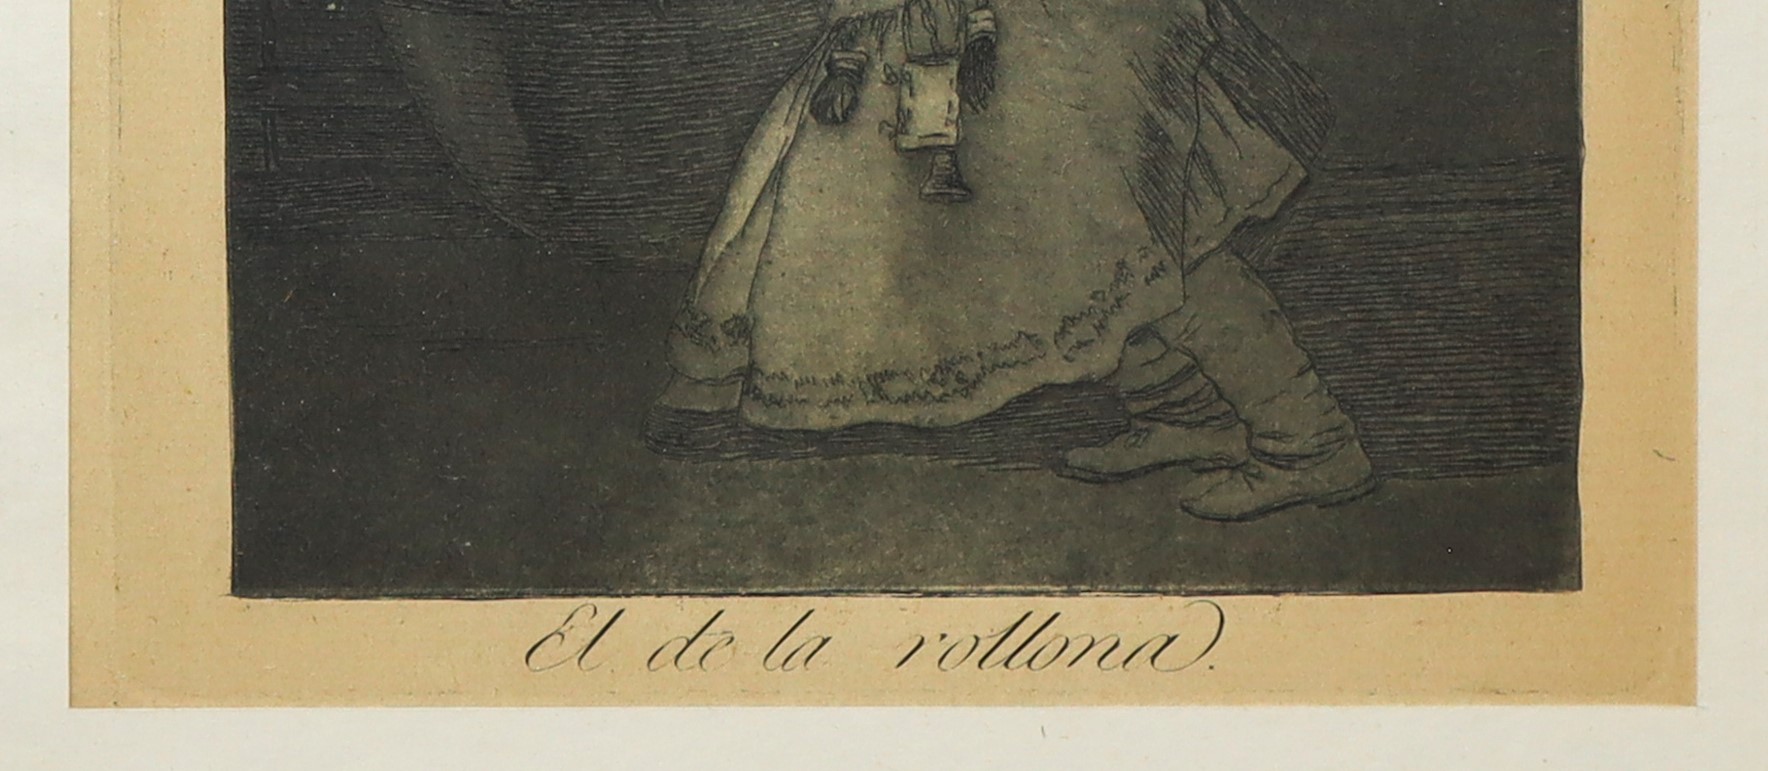 Francisco de Goya (Fuendetodos 1746-Bordeaux 1828) - El de la rollona - Image 3 of 3